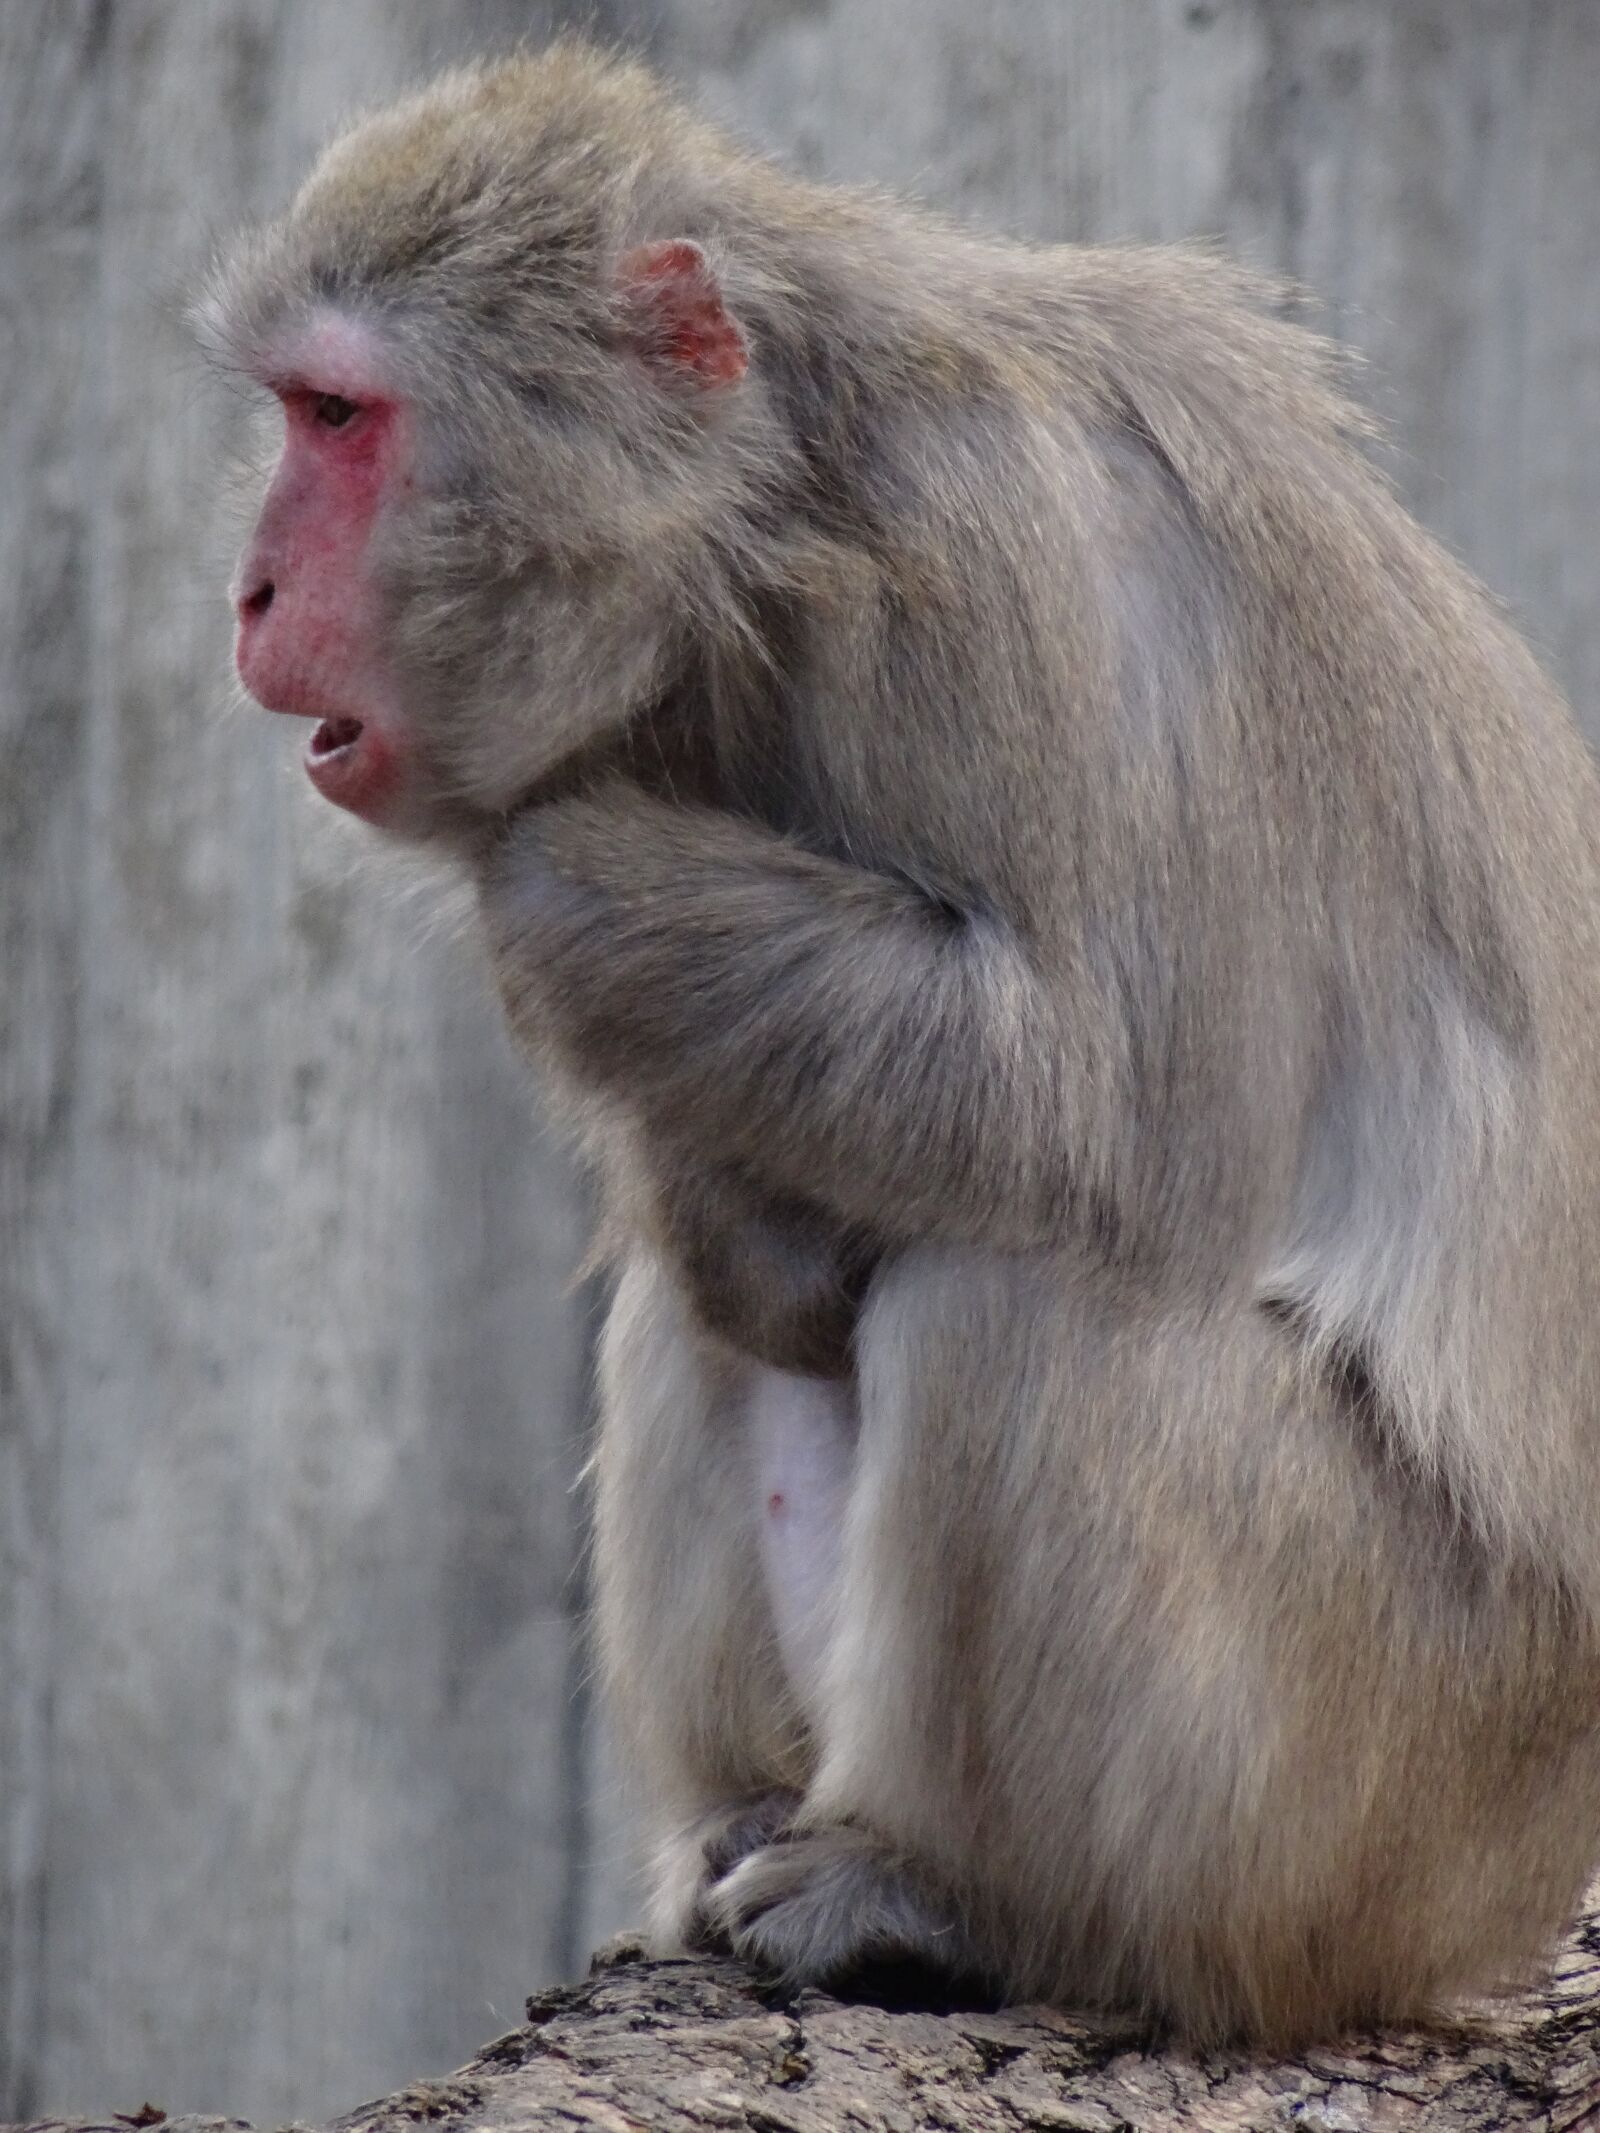 Sony Cyber-shot DSC-HX50V sample photo. Monkey, animal, zoo photography